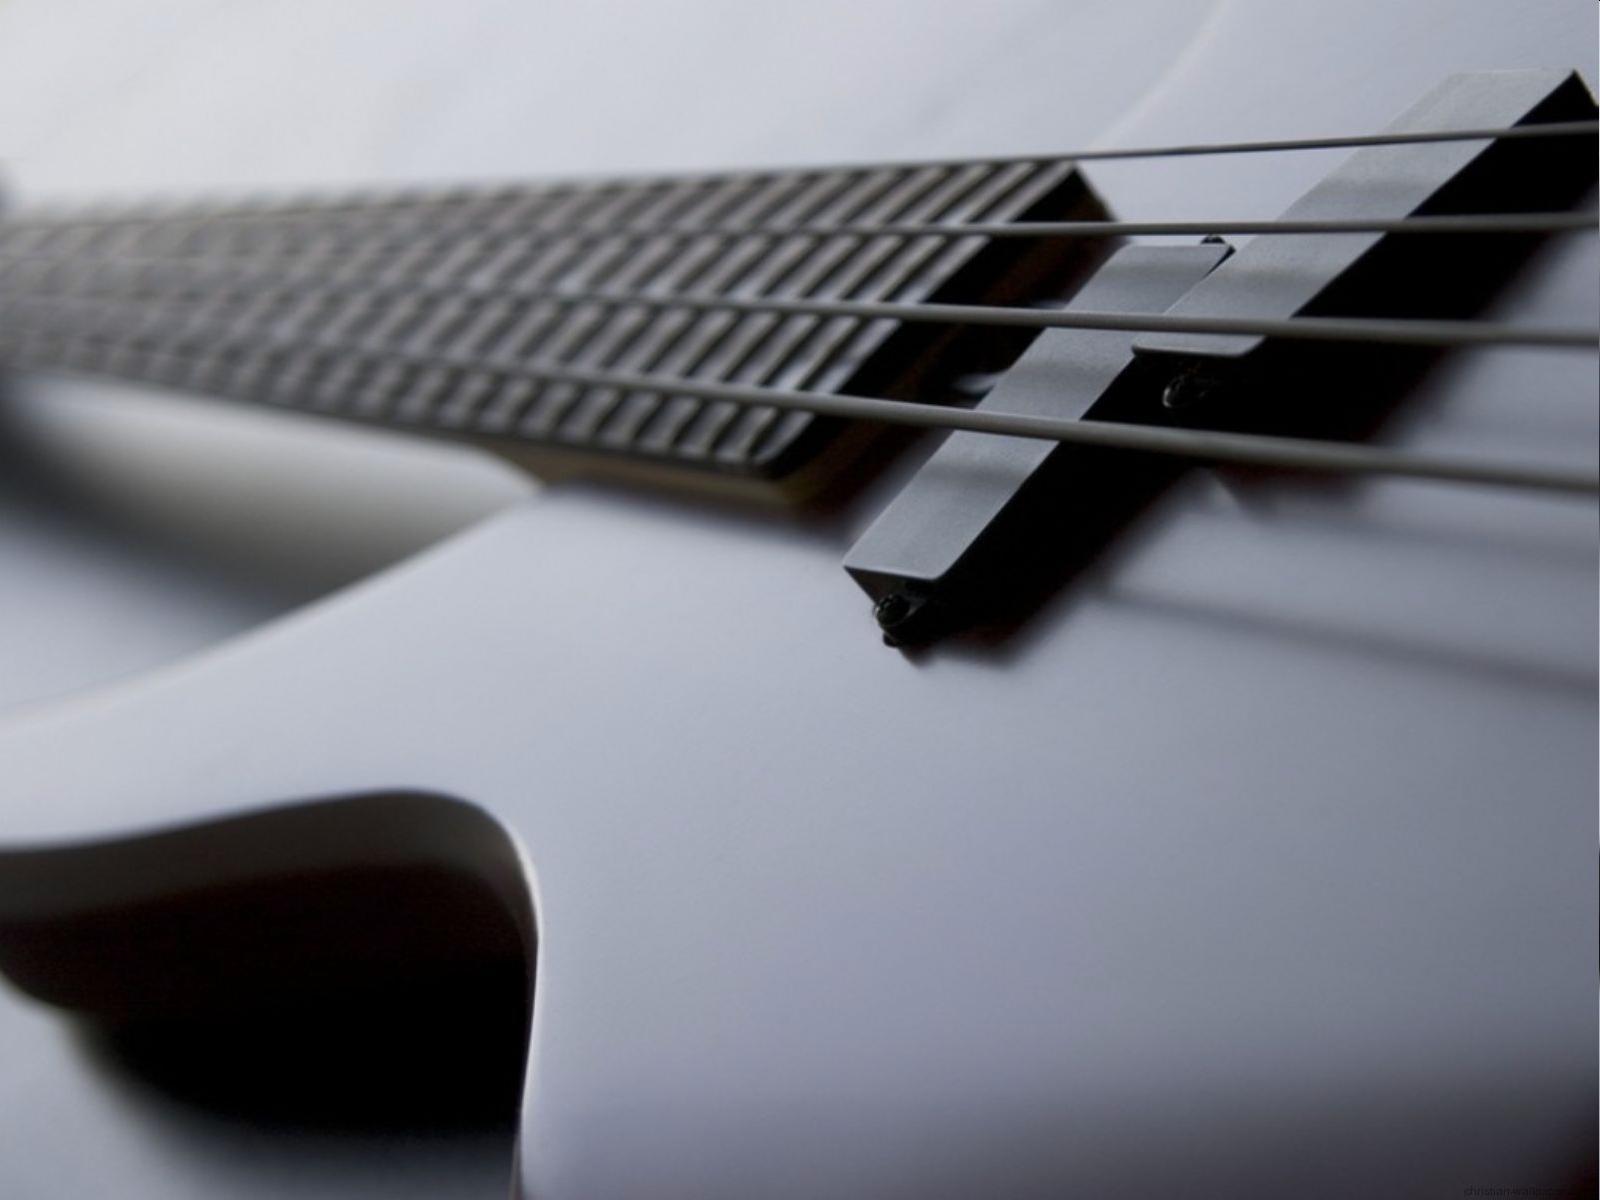 Bass Guitar Wallpaper HD